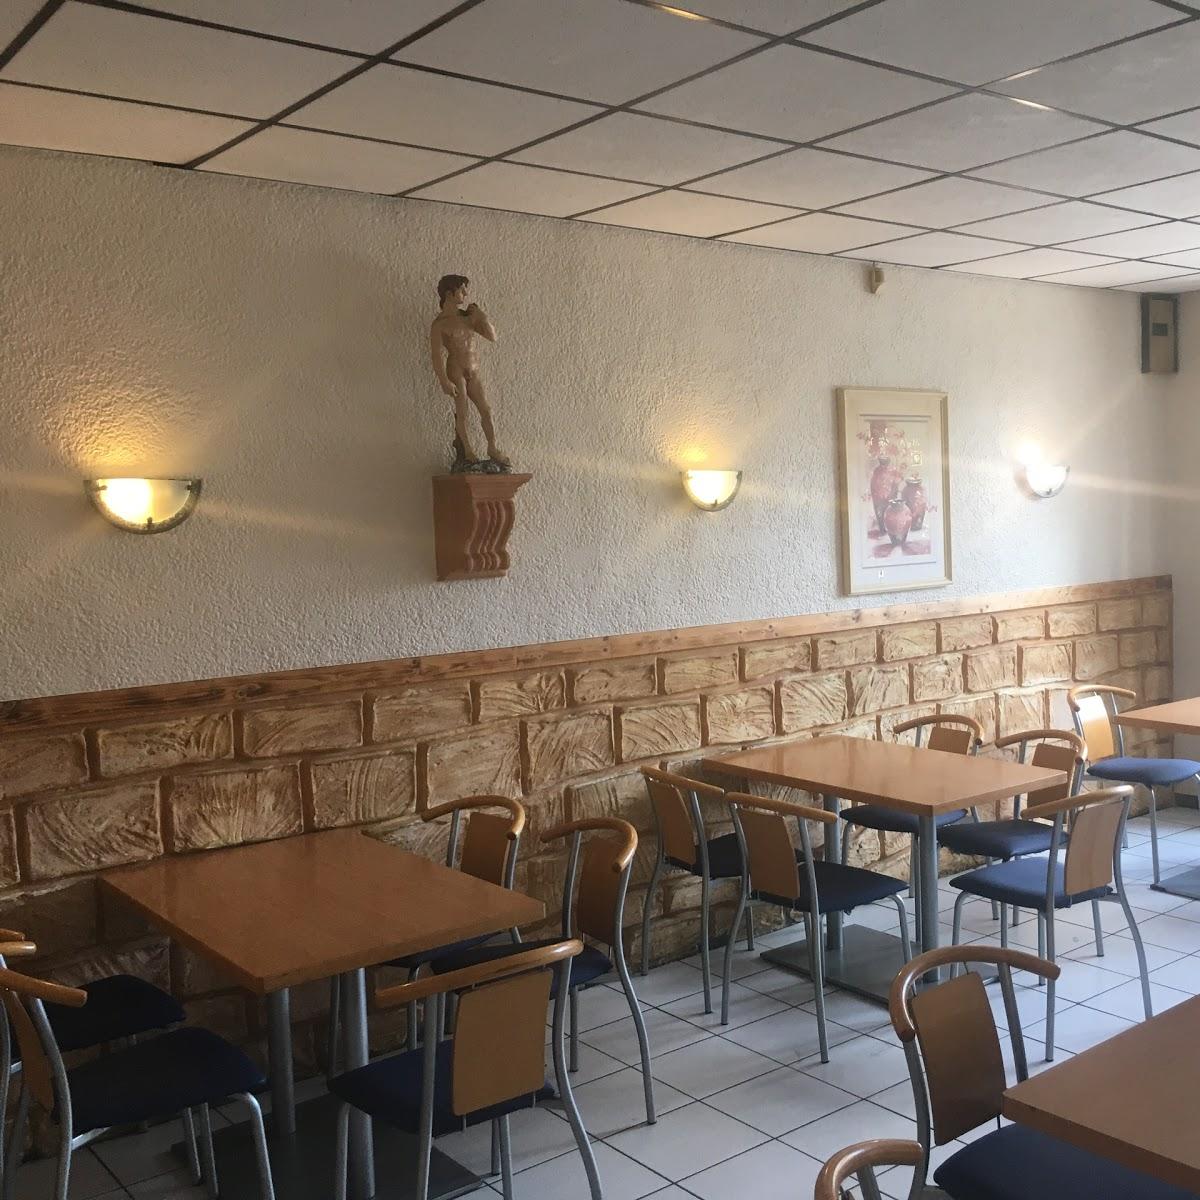 Restaurant "Grillstübchen bei Nikos" in  Ascheberg